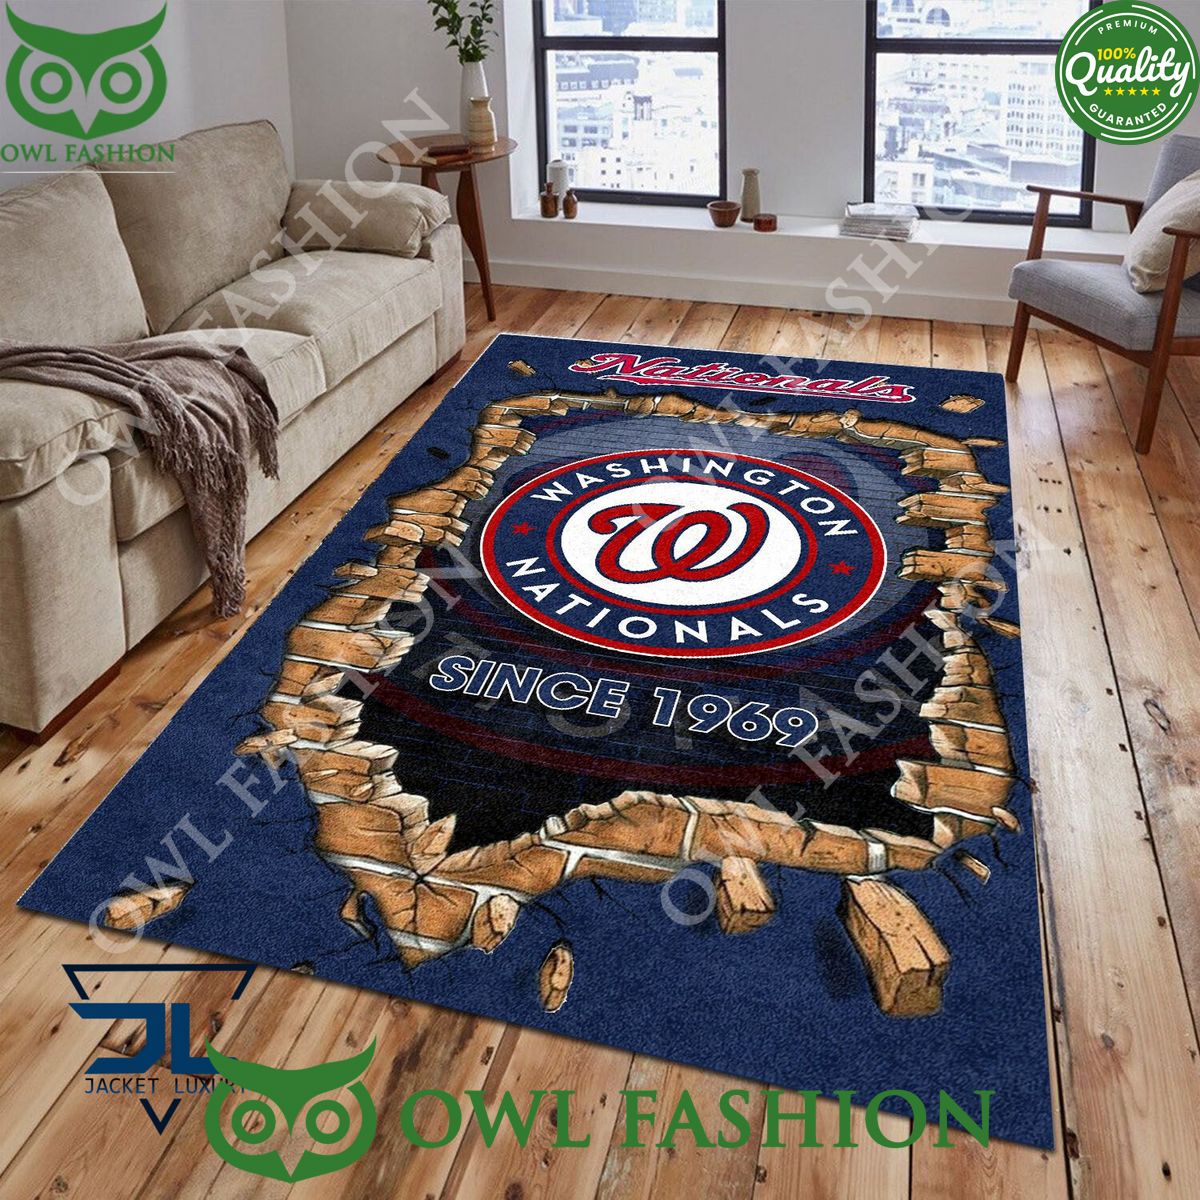 Broken Wall Washington Nationals MLB Baseball Team Rug Carpet Living Room